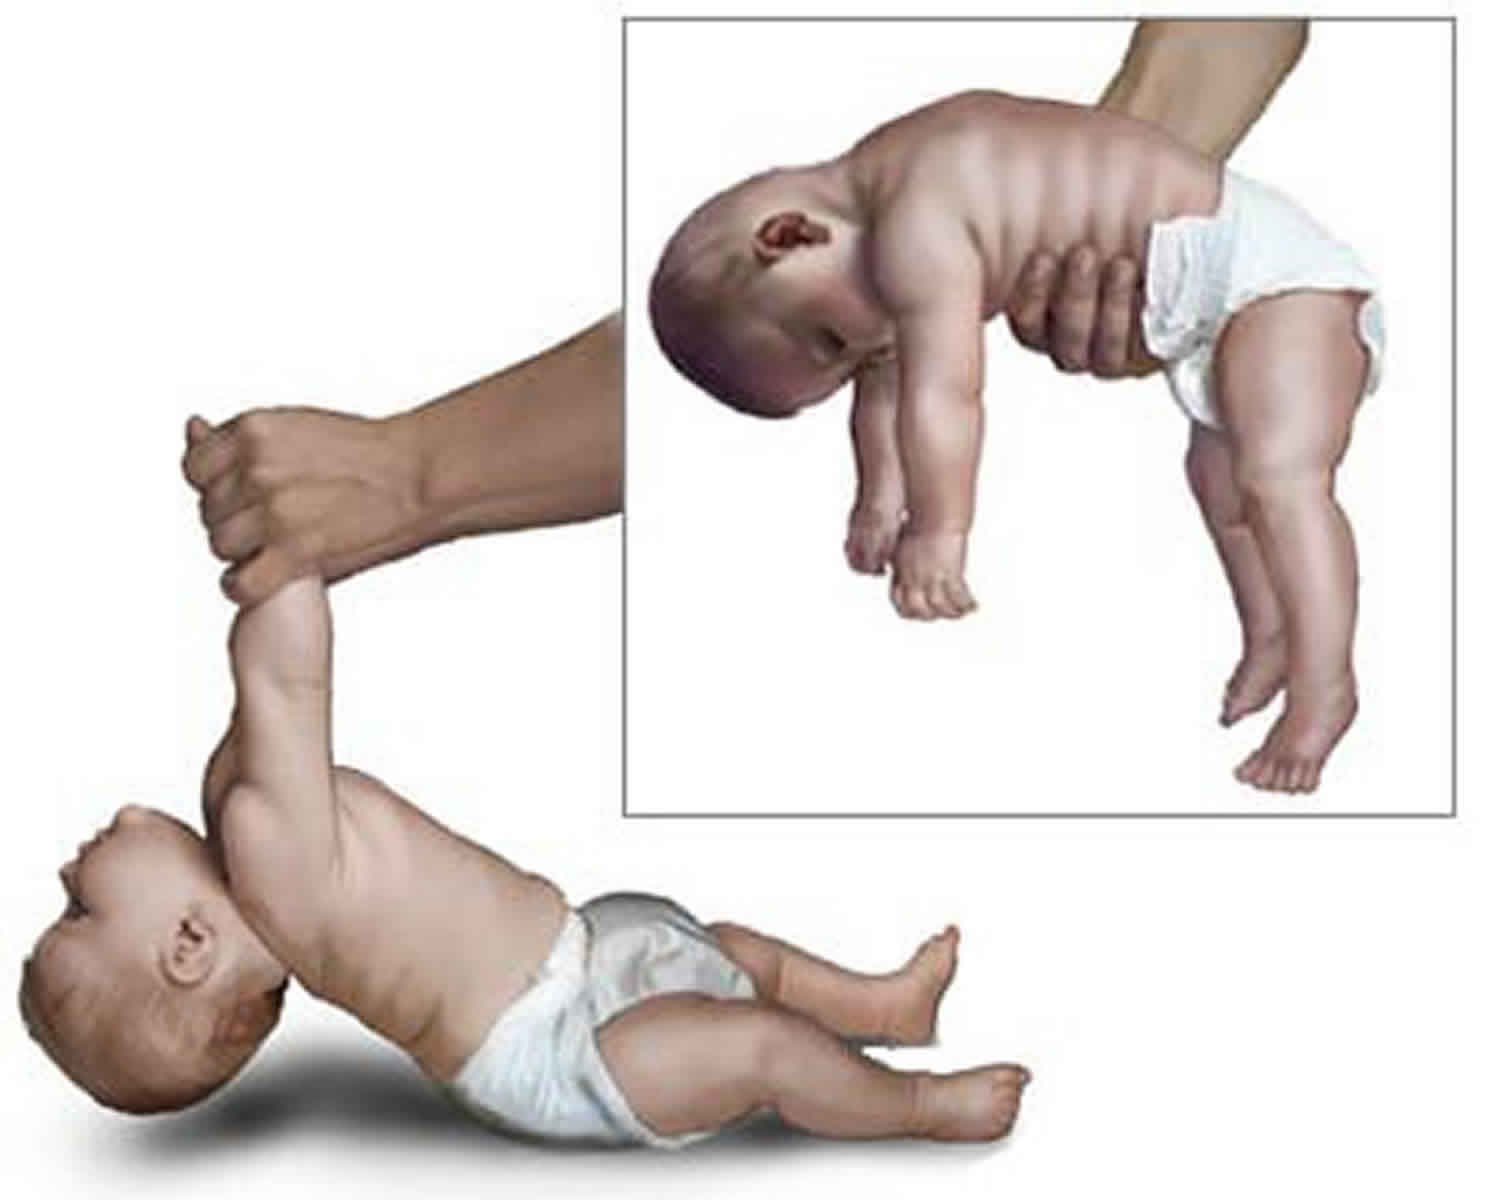 floppy infant syndrome